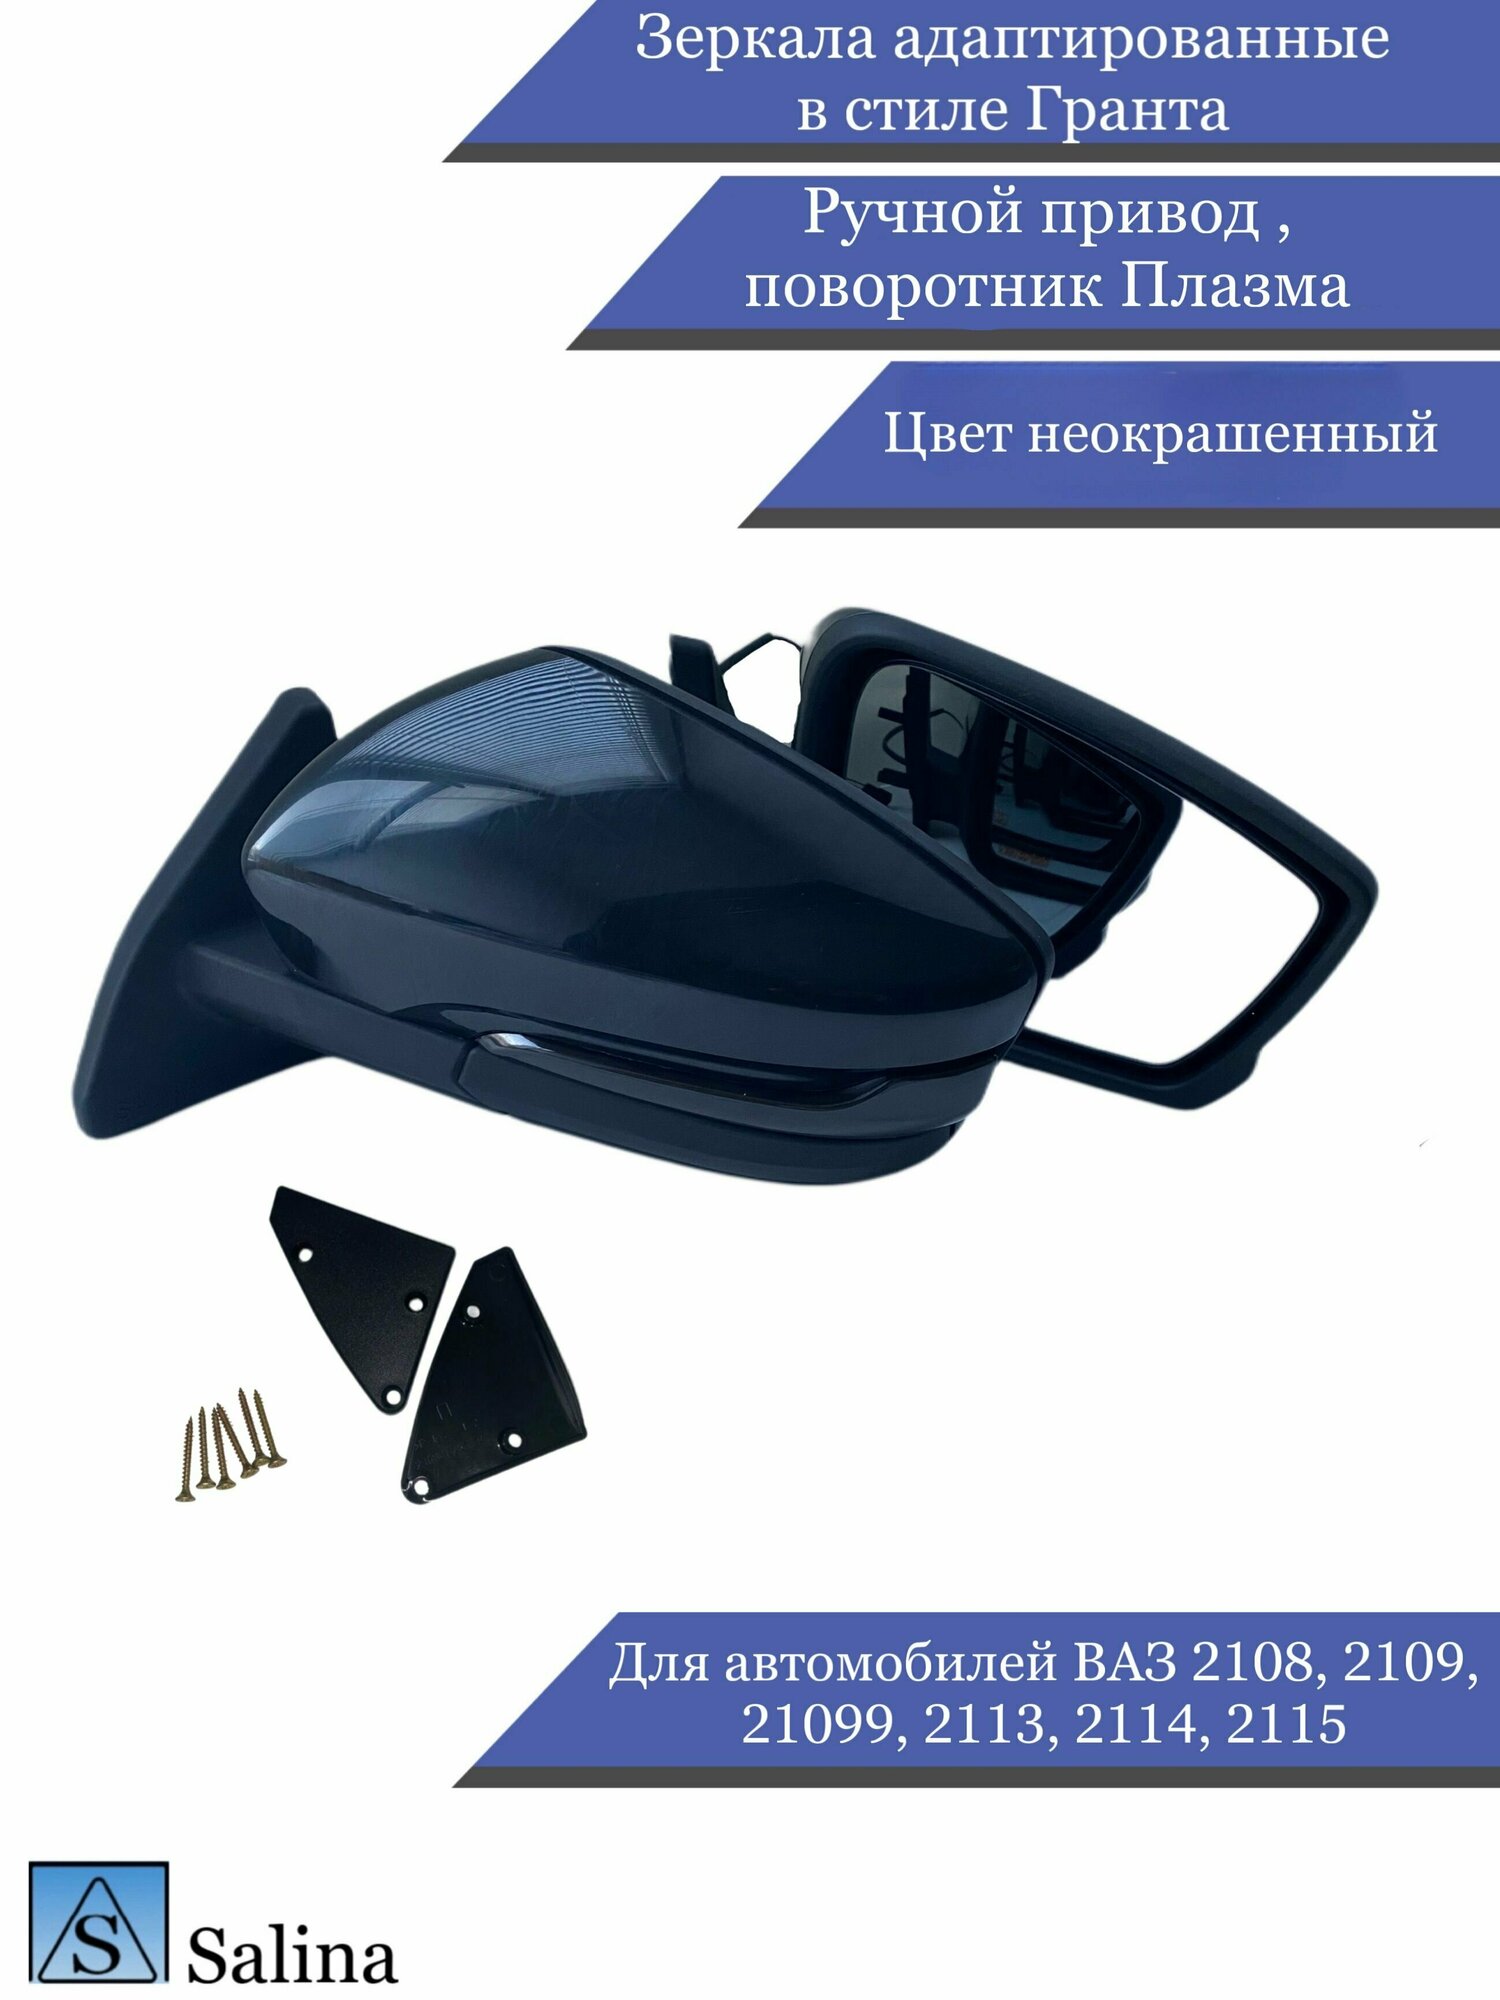 Зеркала адаптированные в стиле Гранта на ВАЗ 2108-2109, 2113-2115 с ручным приводом и повторителем Плазма, цвет неокрашенный черный глянец